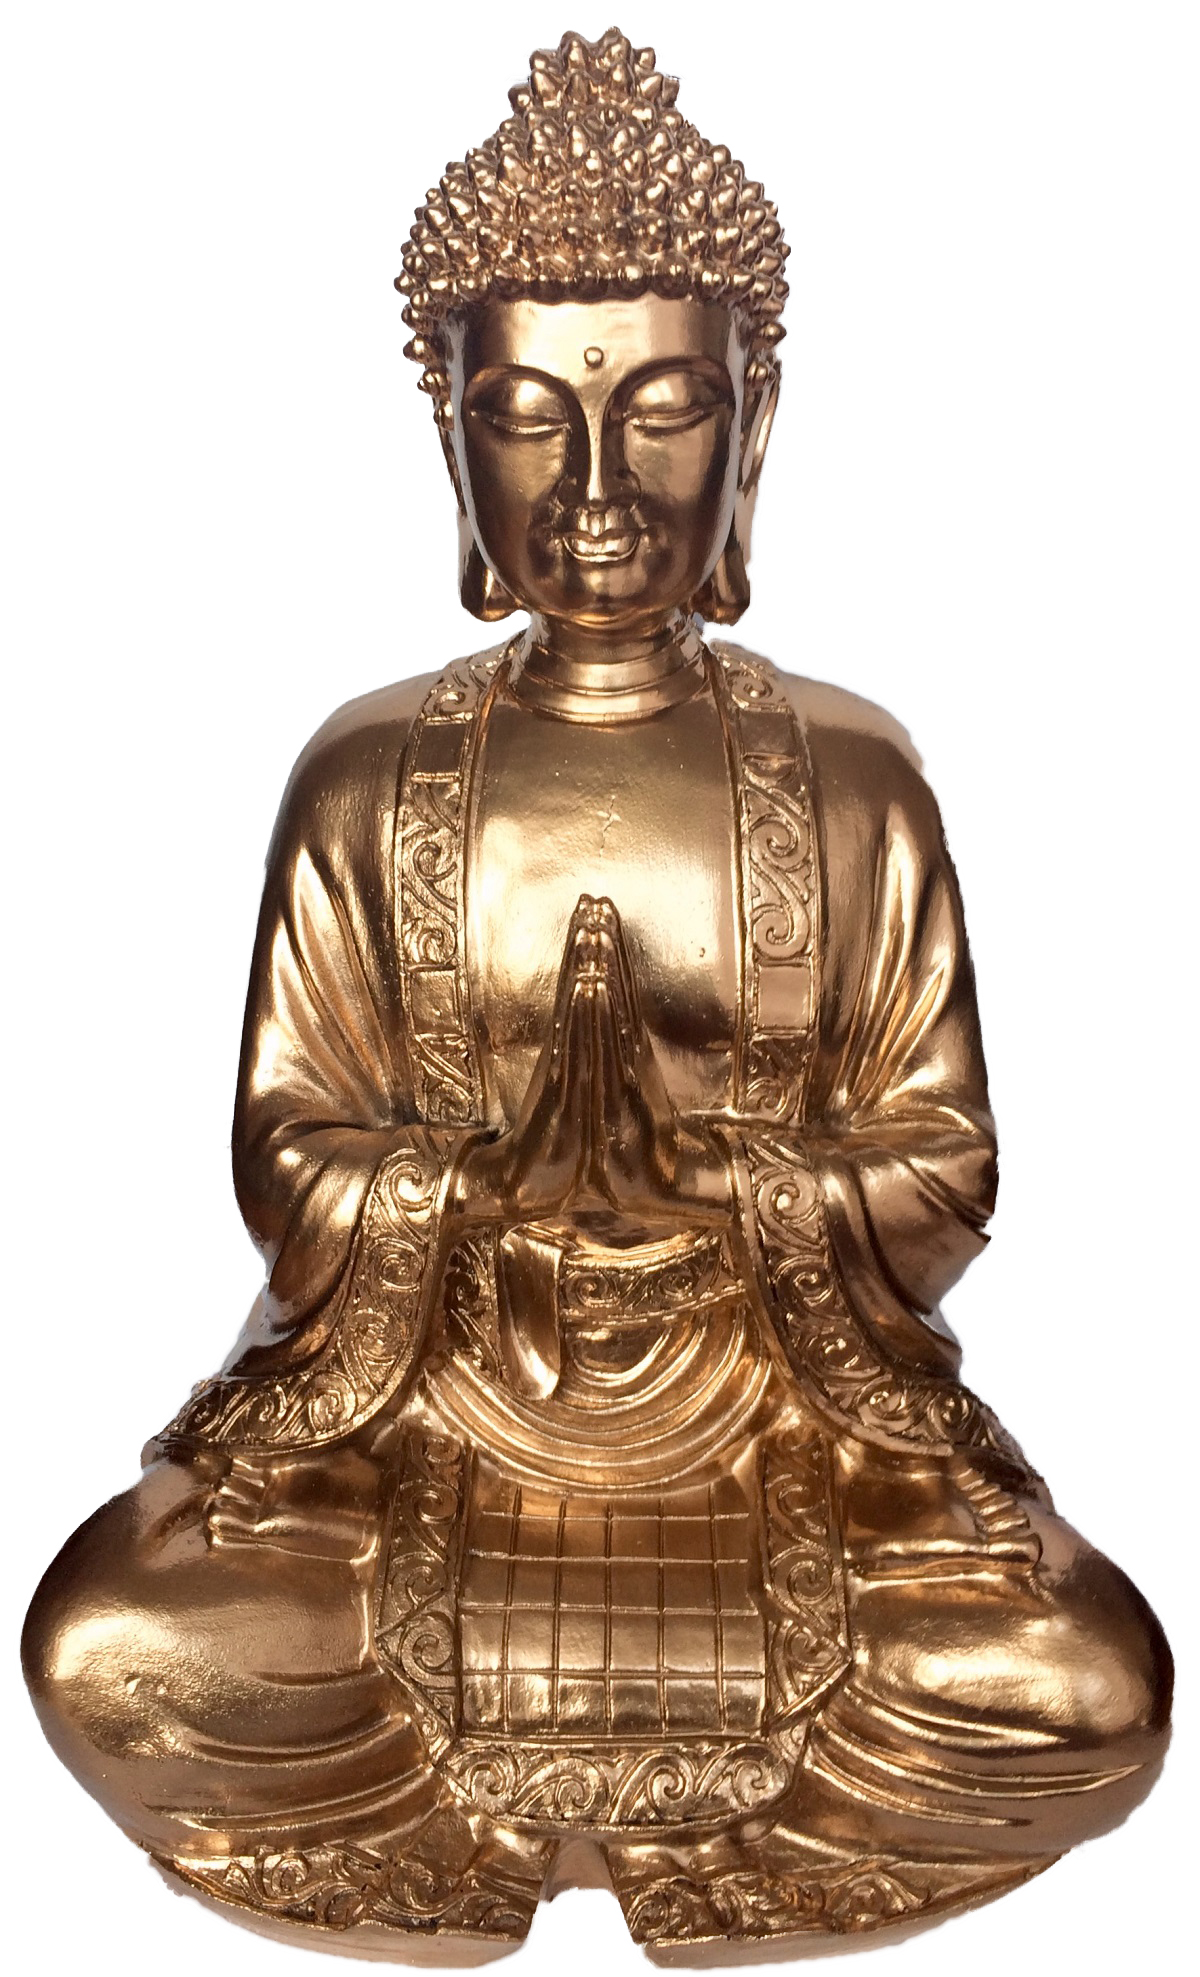 grand-bouddha-dore-en-meditation-pi-17777-sgrbdore-1496506169